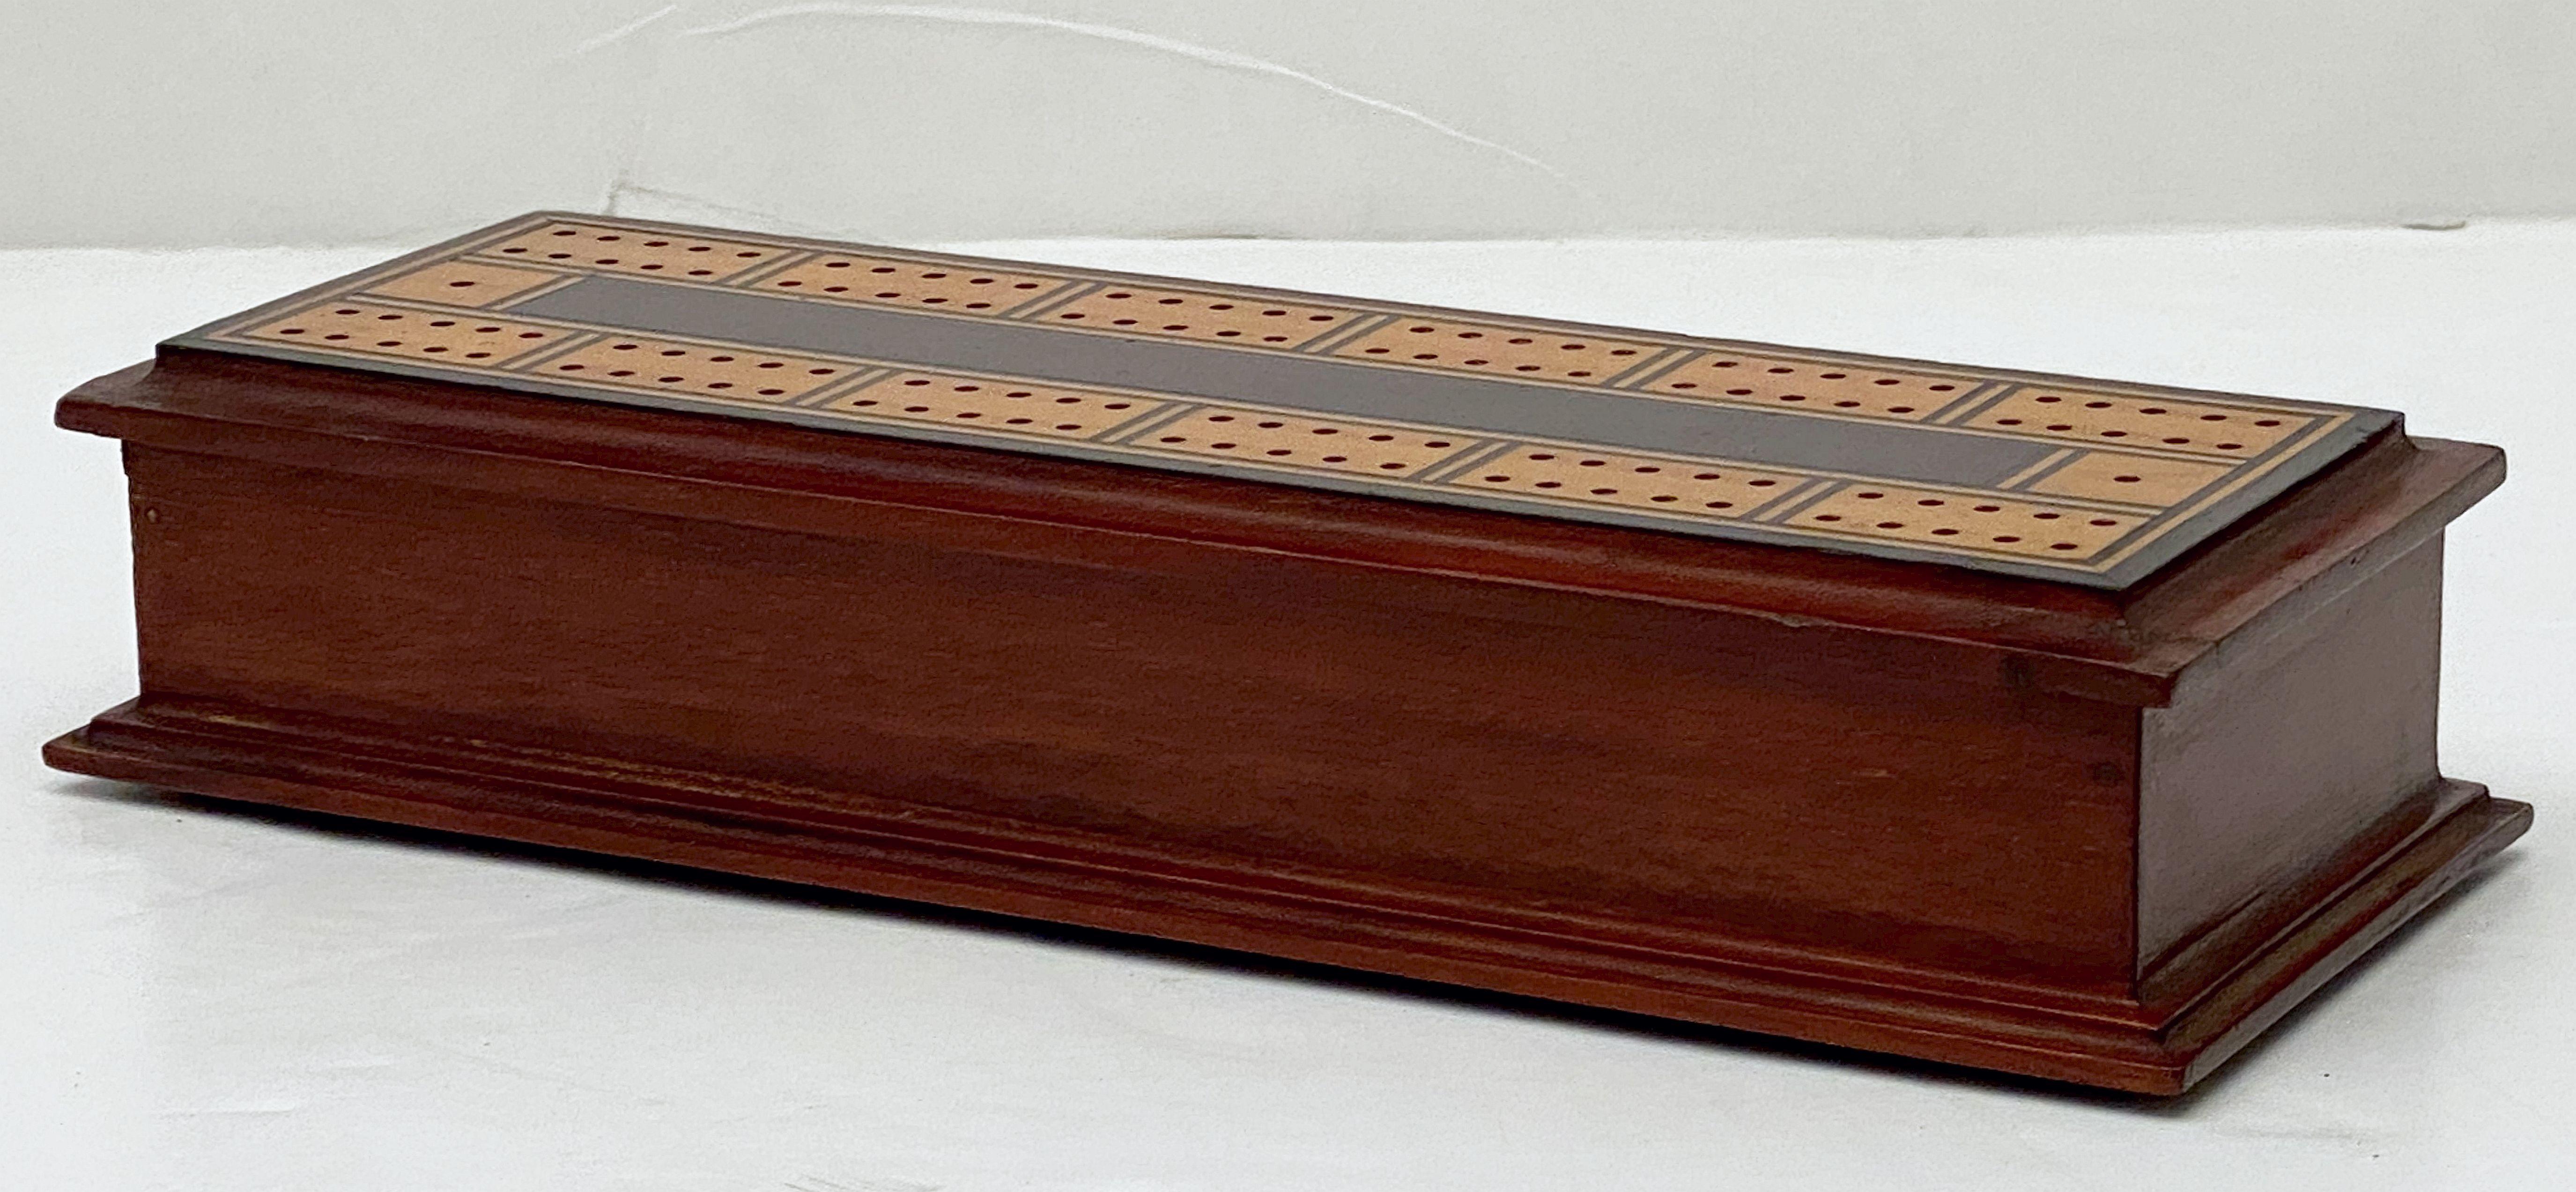 English Cribbage Board or Game Box of Inlaid Mahogany 6